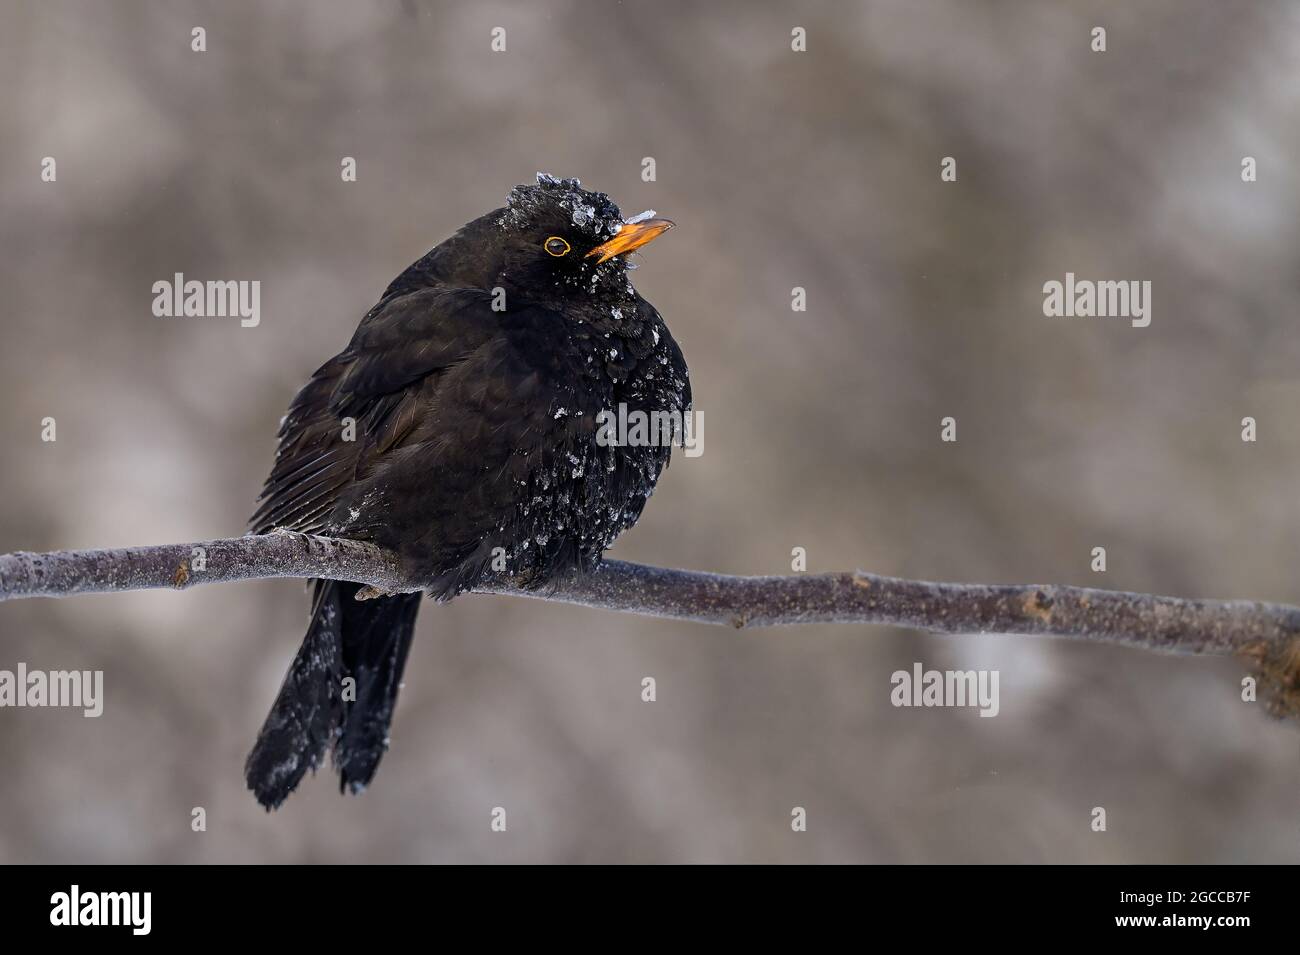 È freddo fuori là? La risposta di questo Blackbird potrebbe essere: No...it's gelare freddo qui! Foto Stock